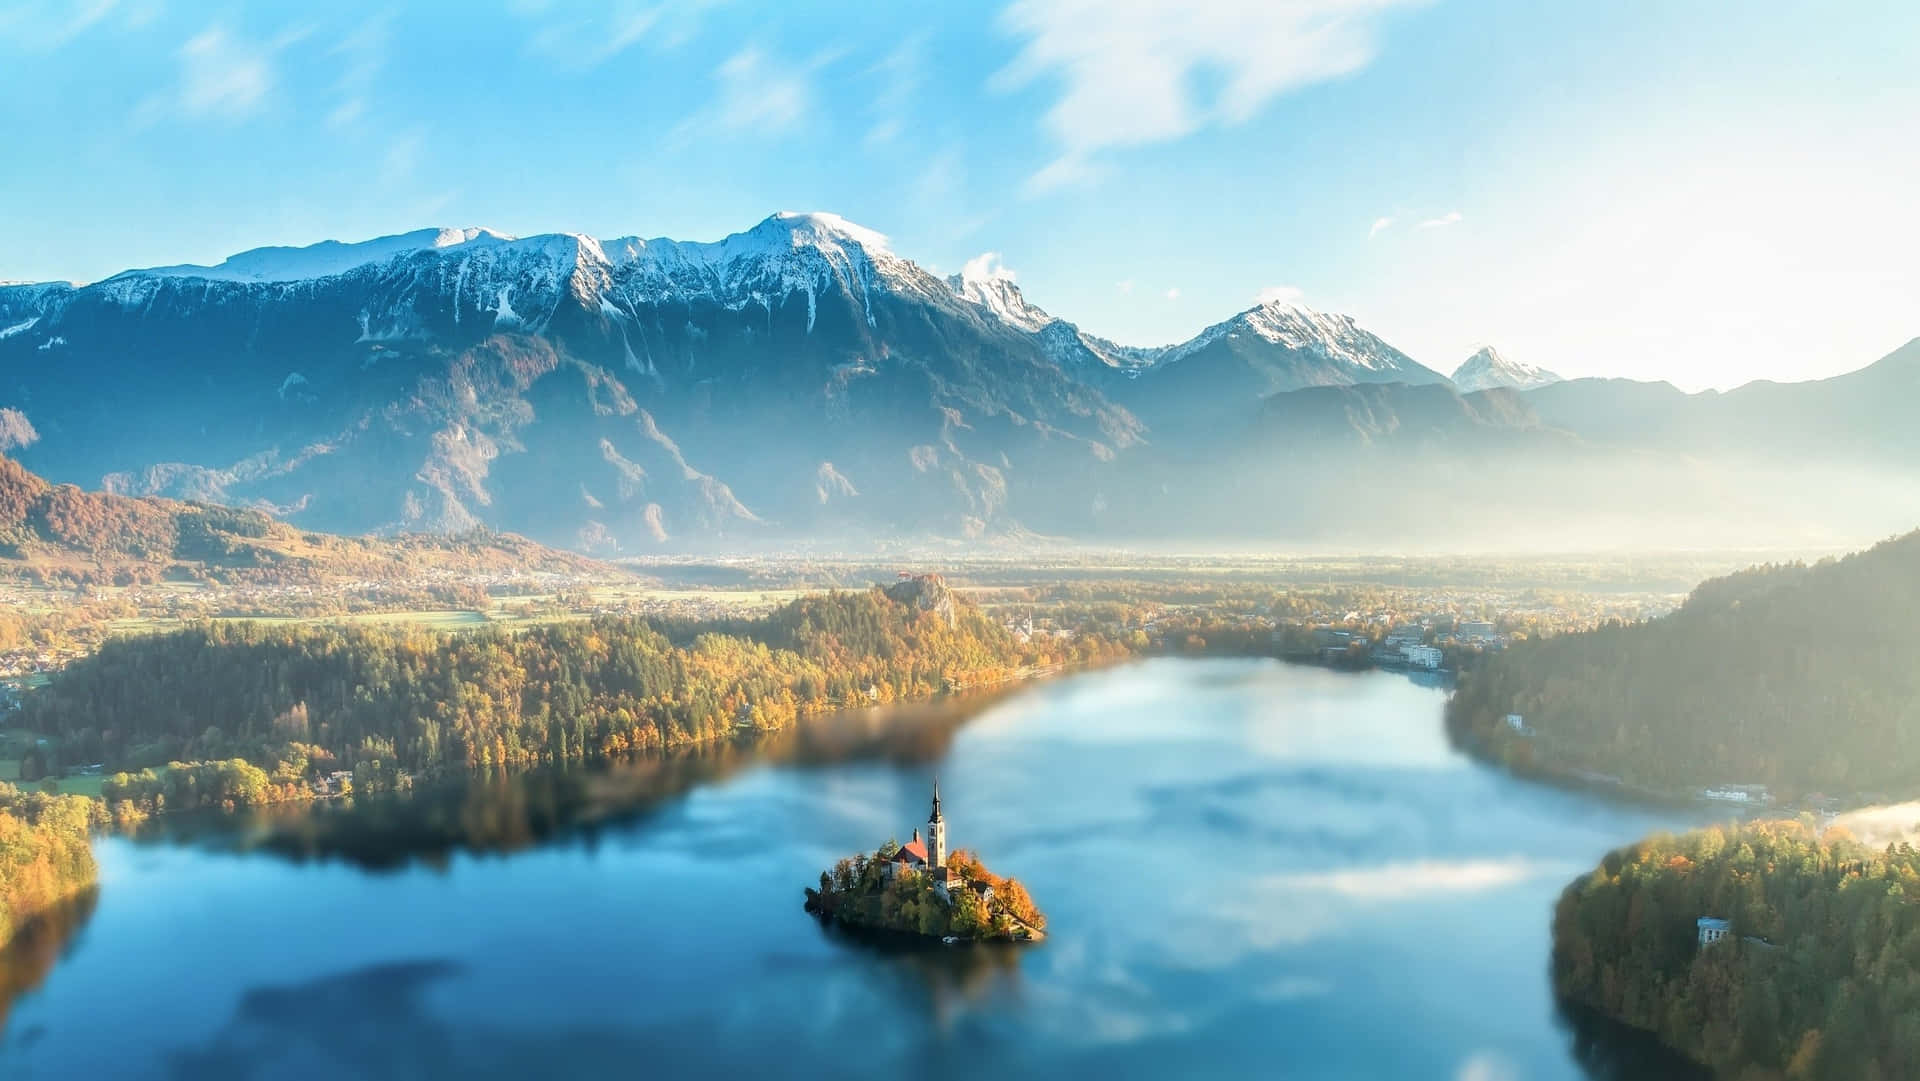 Unavista Impresionante De La Cima De Los Alpes Julianos Con El Lago Bled Al Fondo. Fondo de pantalla